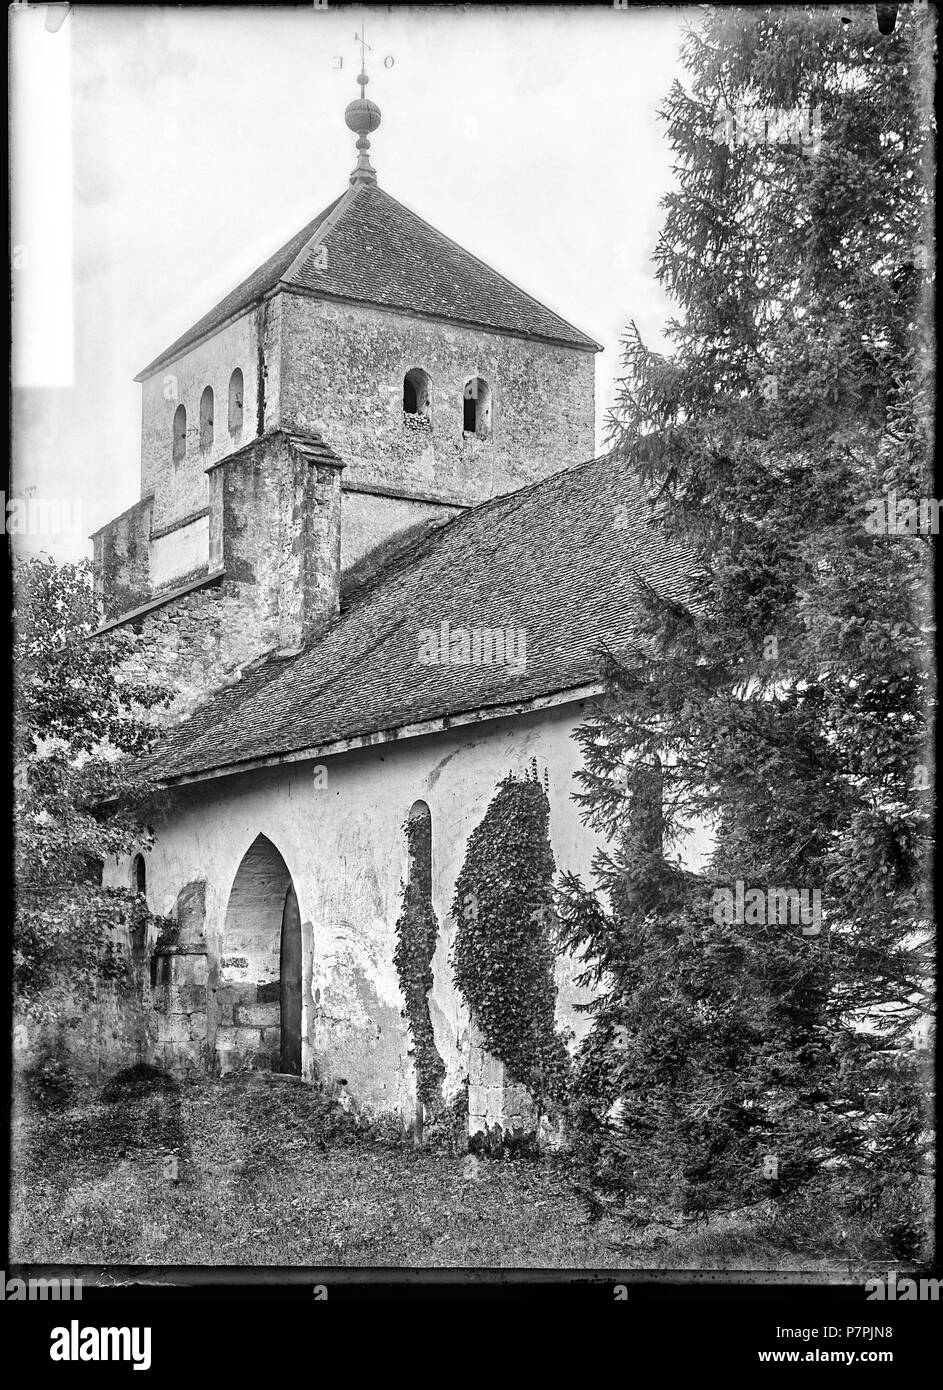 69 CH-NB - Chéserex, Ancienne Abbaye de Bonmont, Tour, vue partielle -  Collection Max van Berchem - EAD-7227 Stock Photo - Alamy